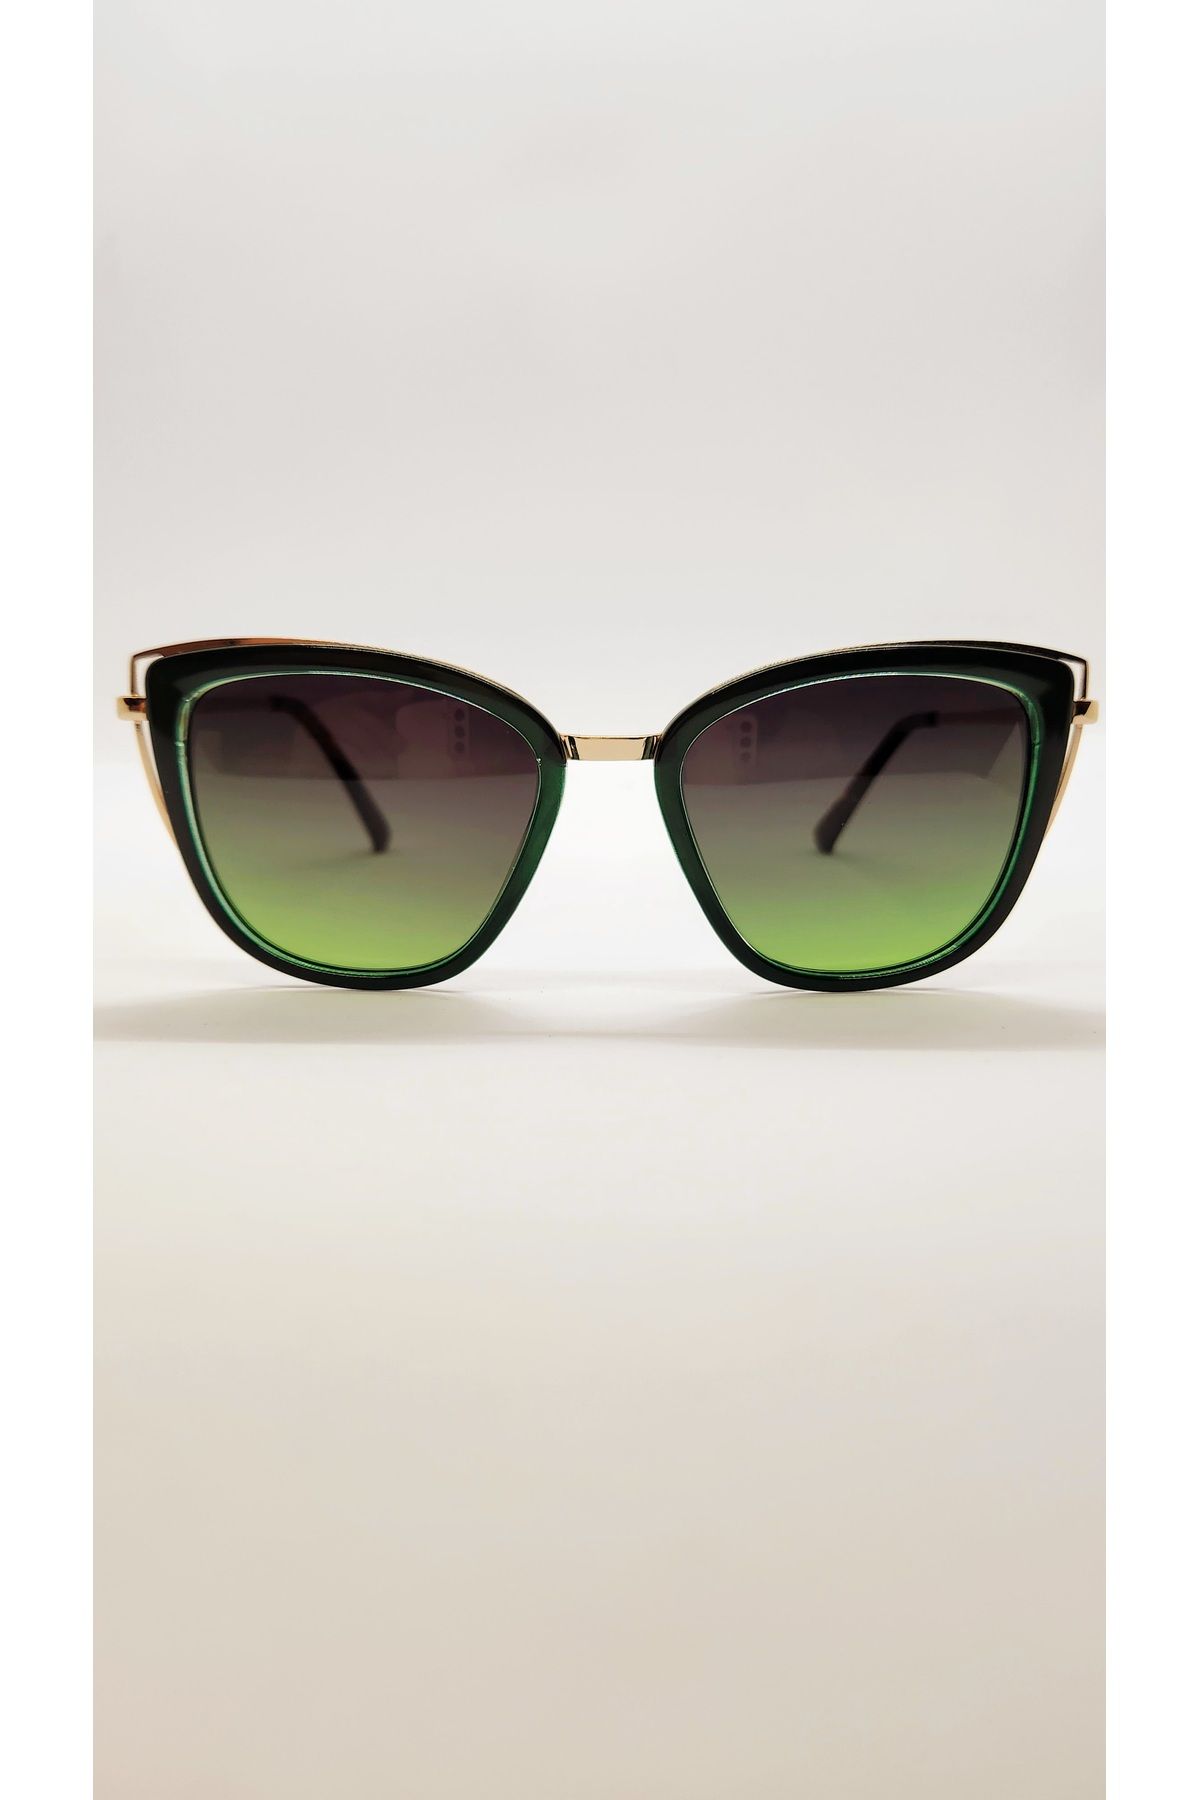 Benx Sunglasses Çekik Model Yeşil Camlı Kadın Güneş Gözlüğü